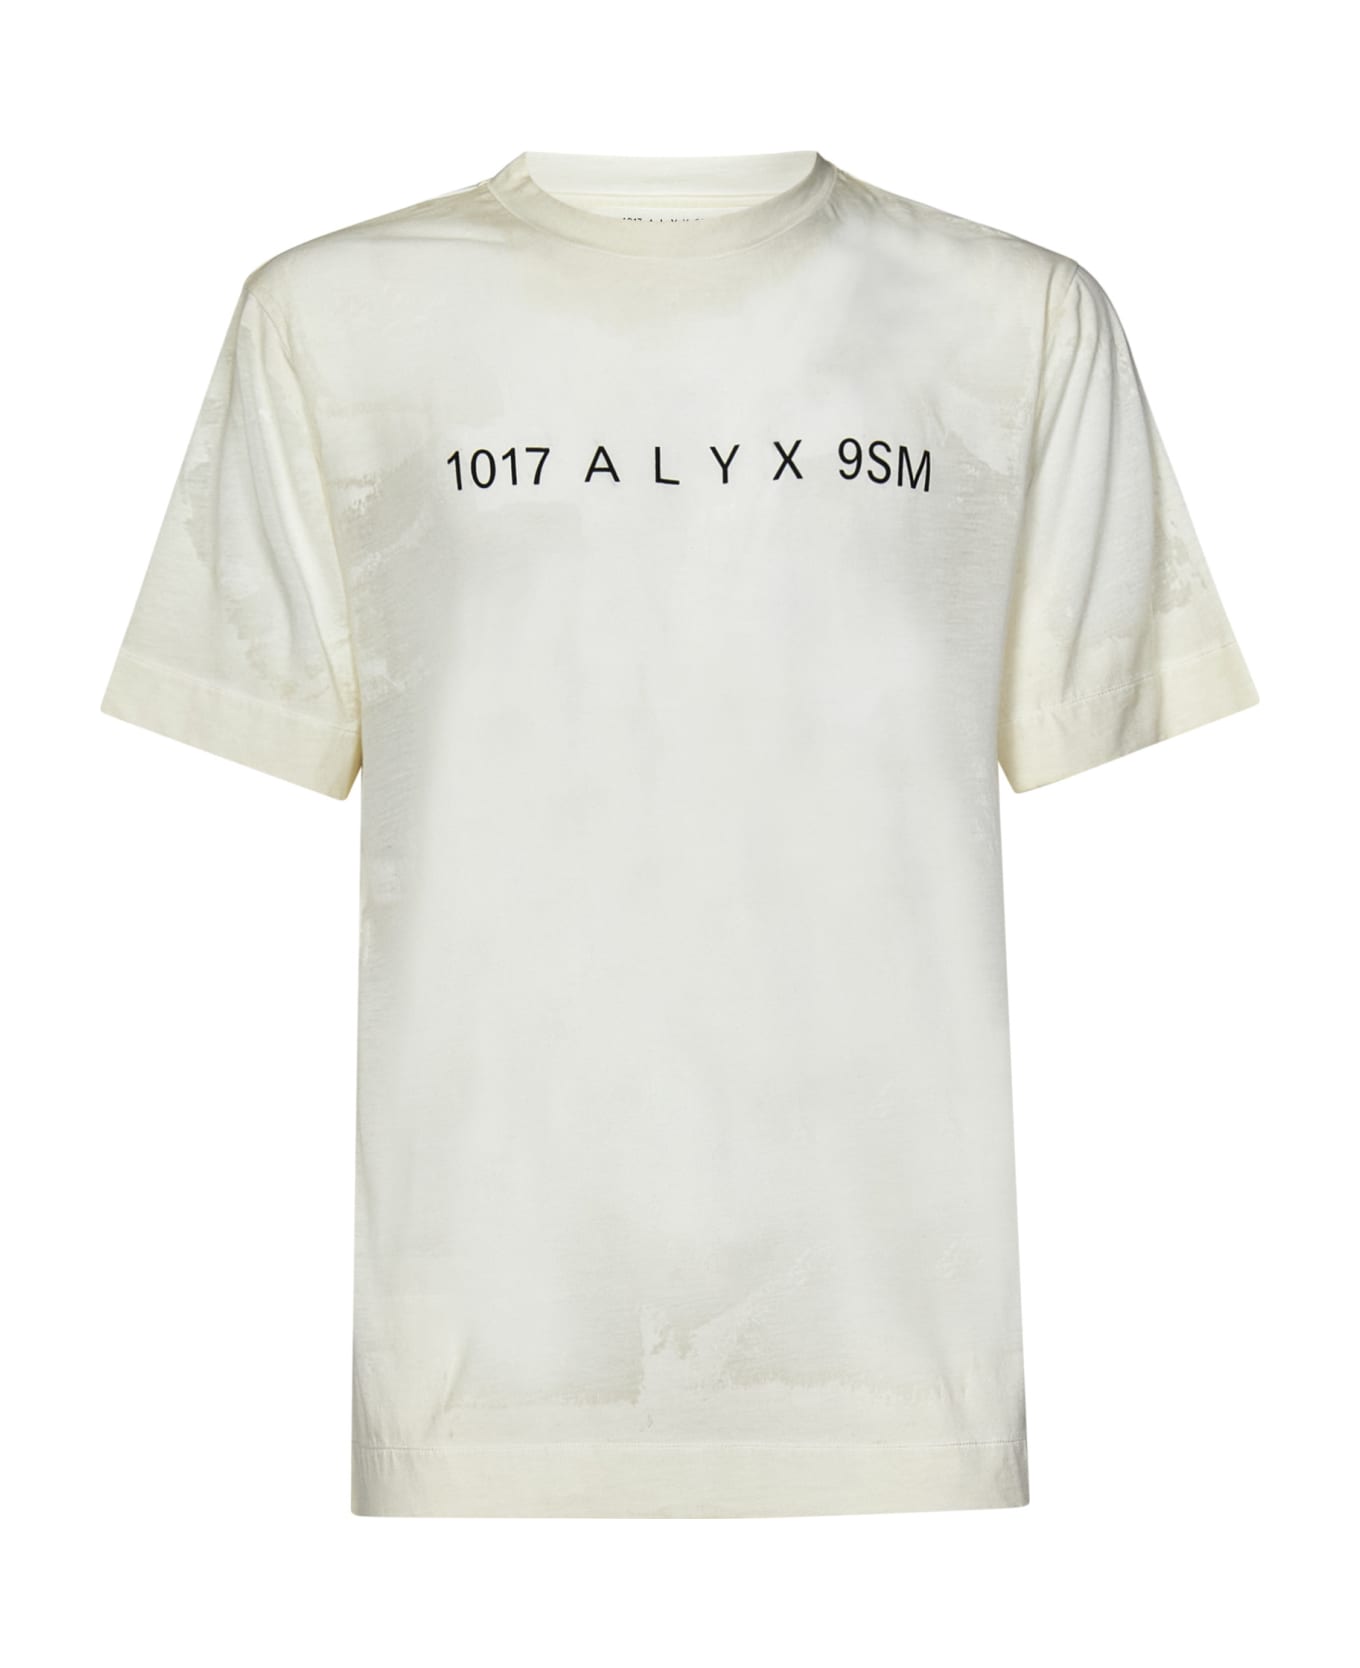 1017 ALYX 9SM T-shirt - White シャツ